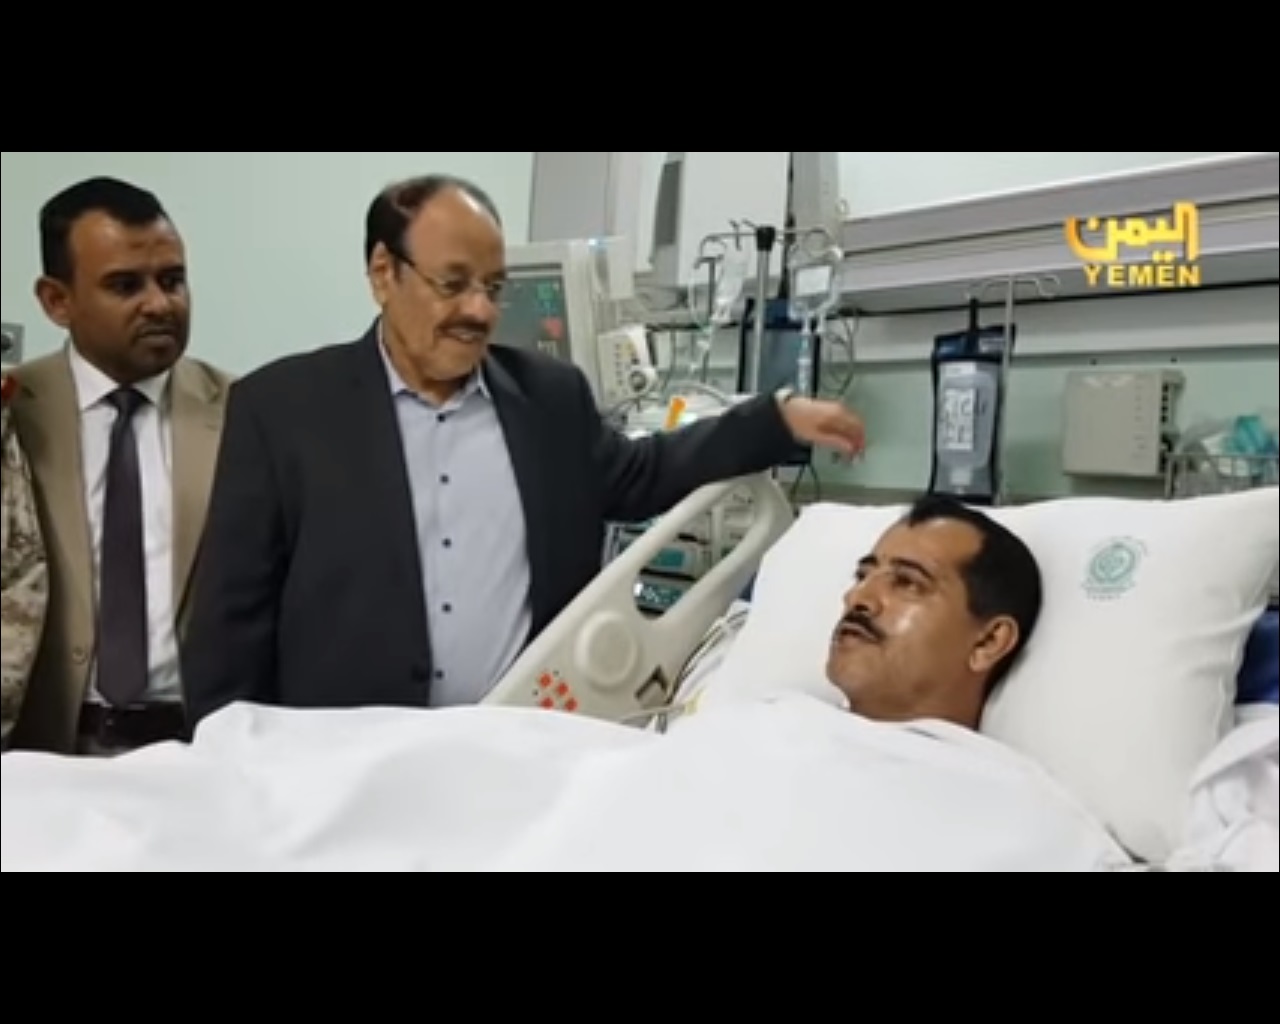 شاهد.. أول فيديو لرئيس الأركان اليمنية يدحض شائعة اغتياله